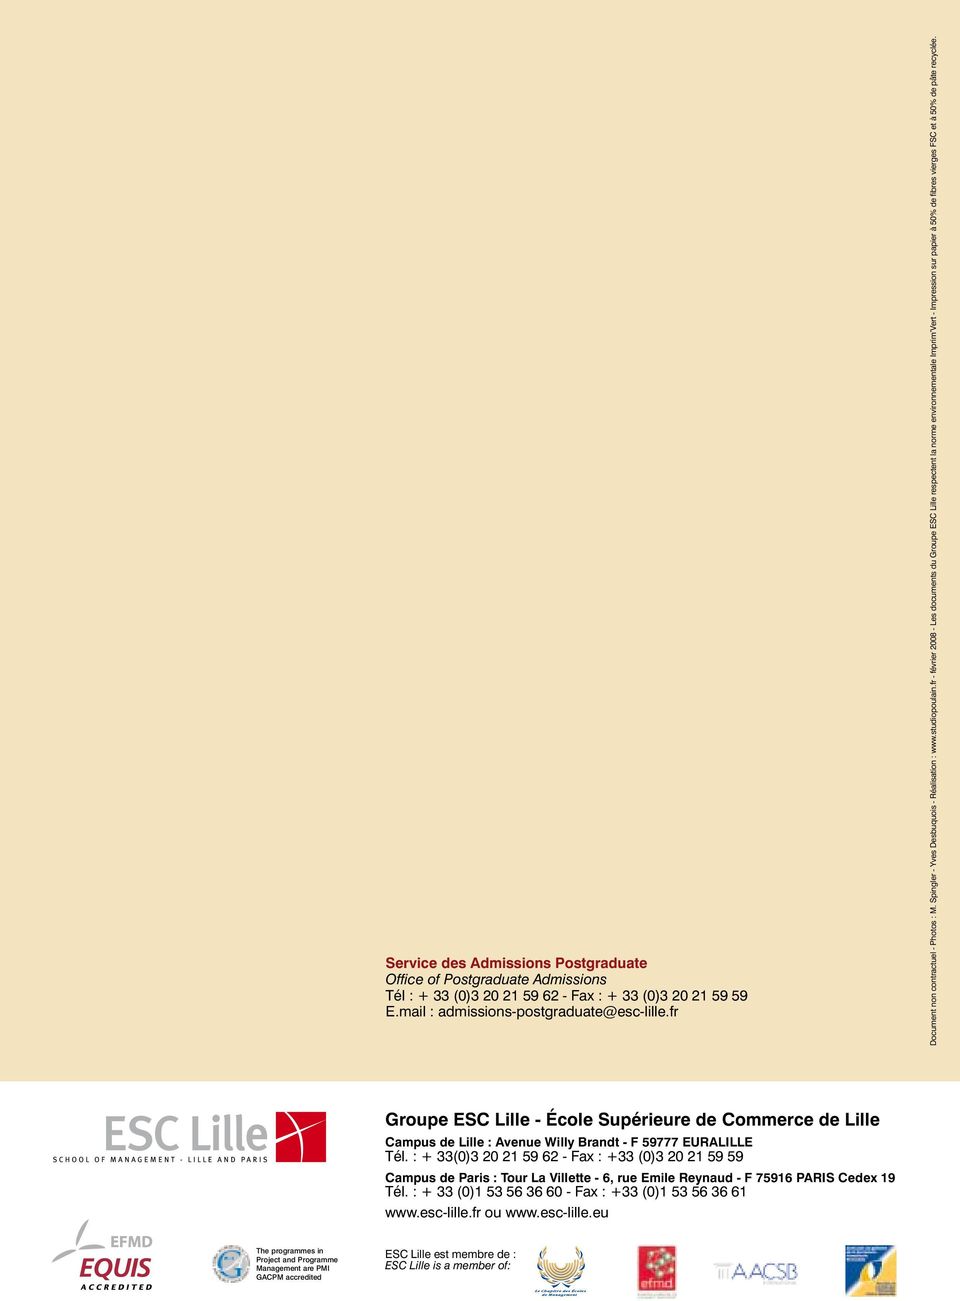 fr - février 2008 - Les documents du Groupe ESC Lille respectent la norme environnementale Imprim Vert - Impression sur papier à 50% de fibres vierges FSC et à 50% de pâte recyclée.